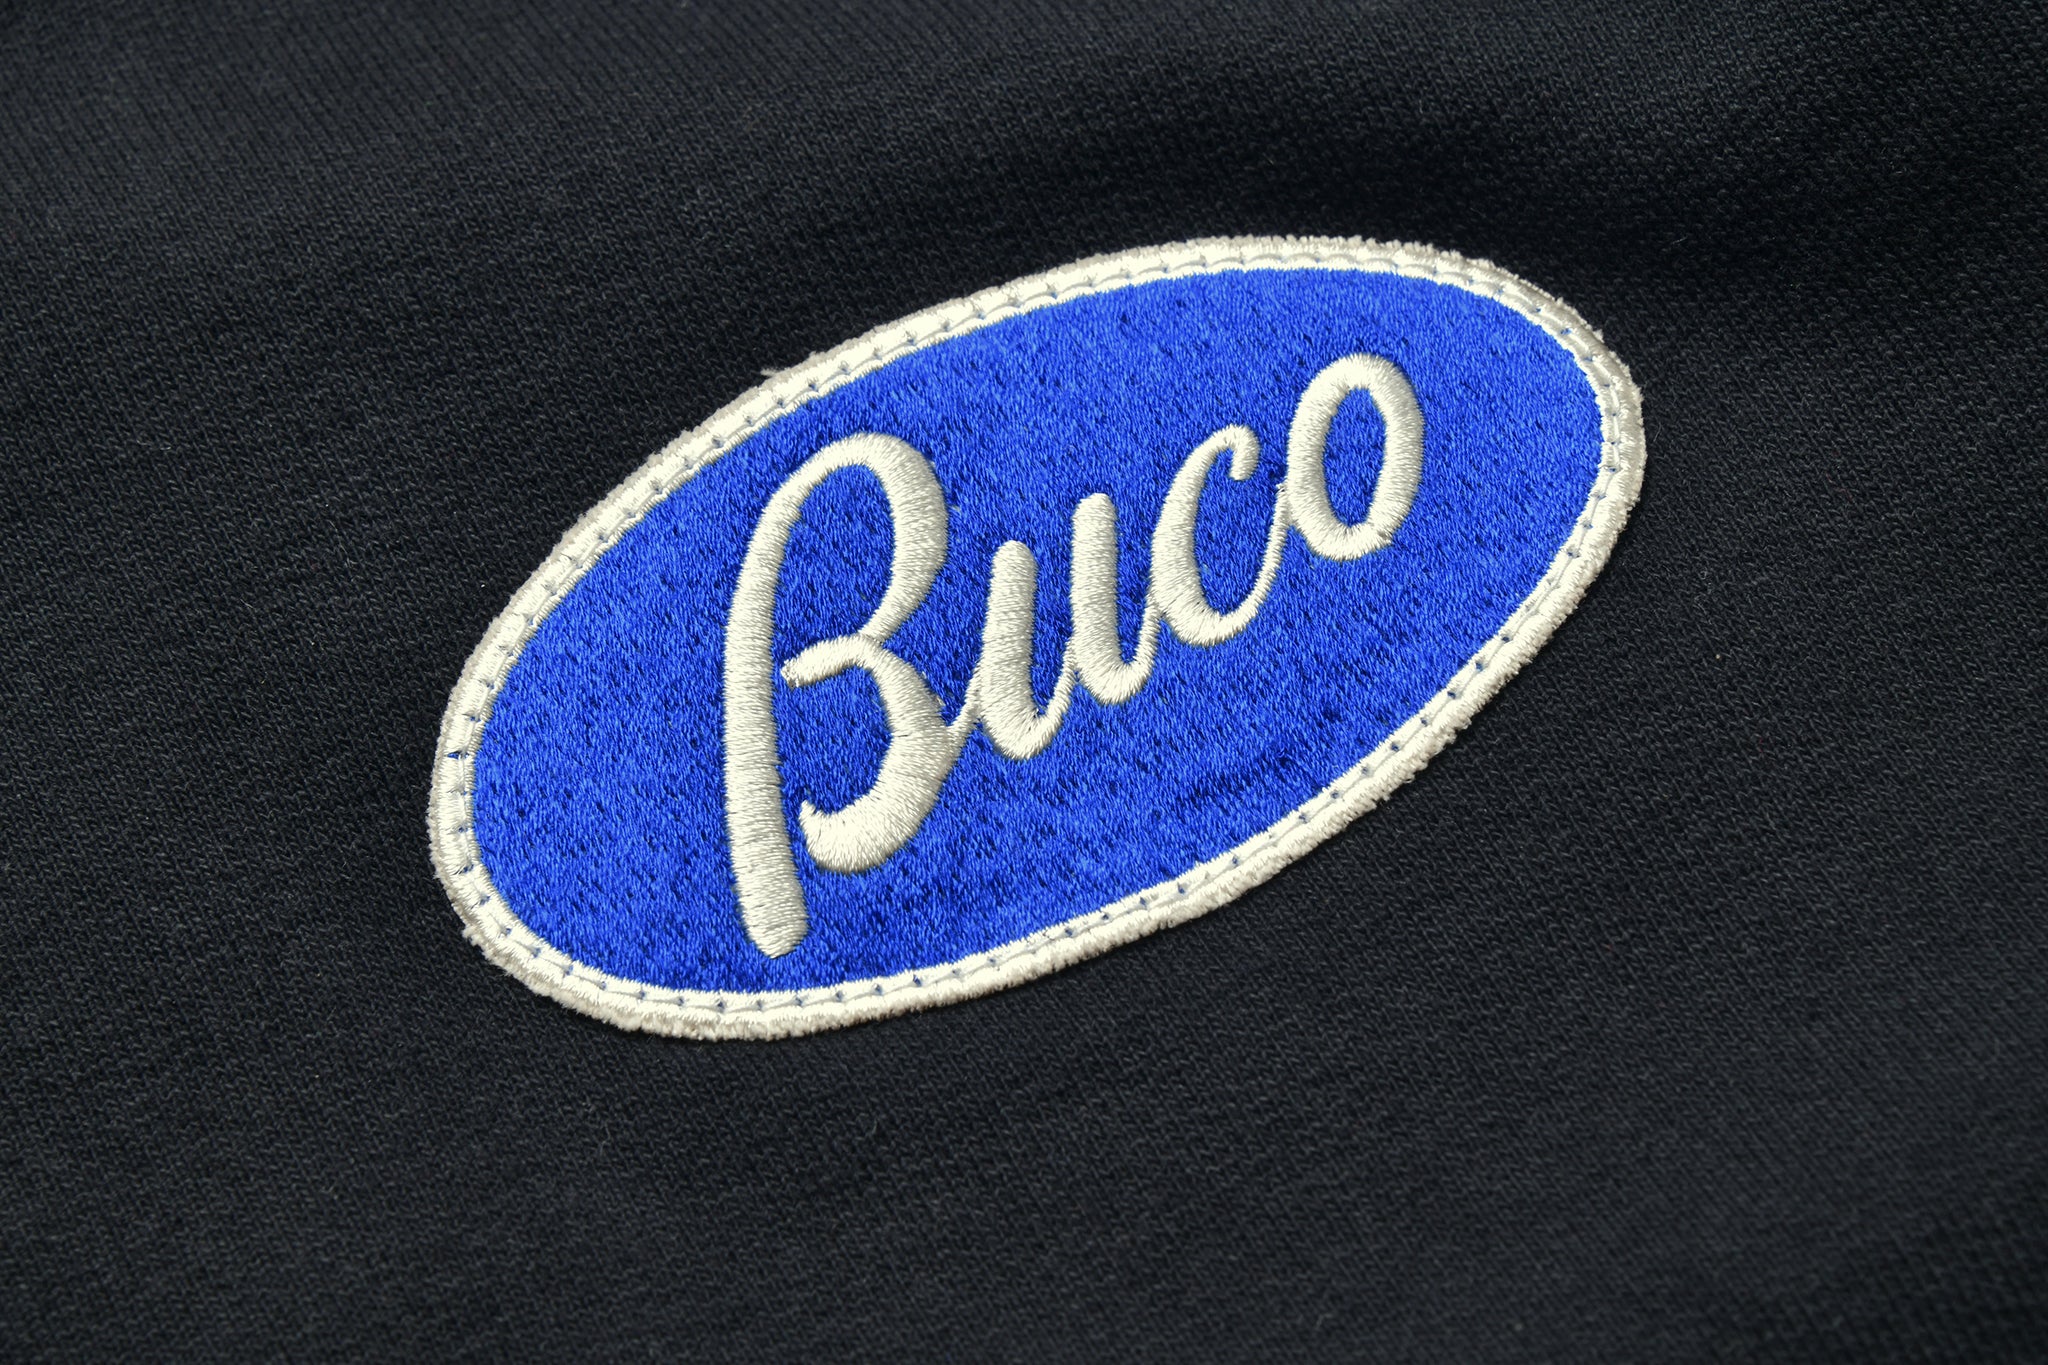 BUCO F/Z SWEATSHIRT / BUCO OVAL LOGO